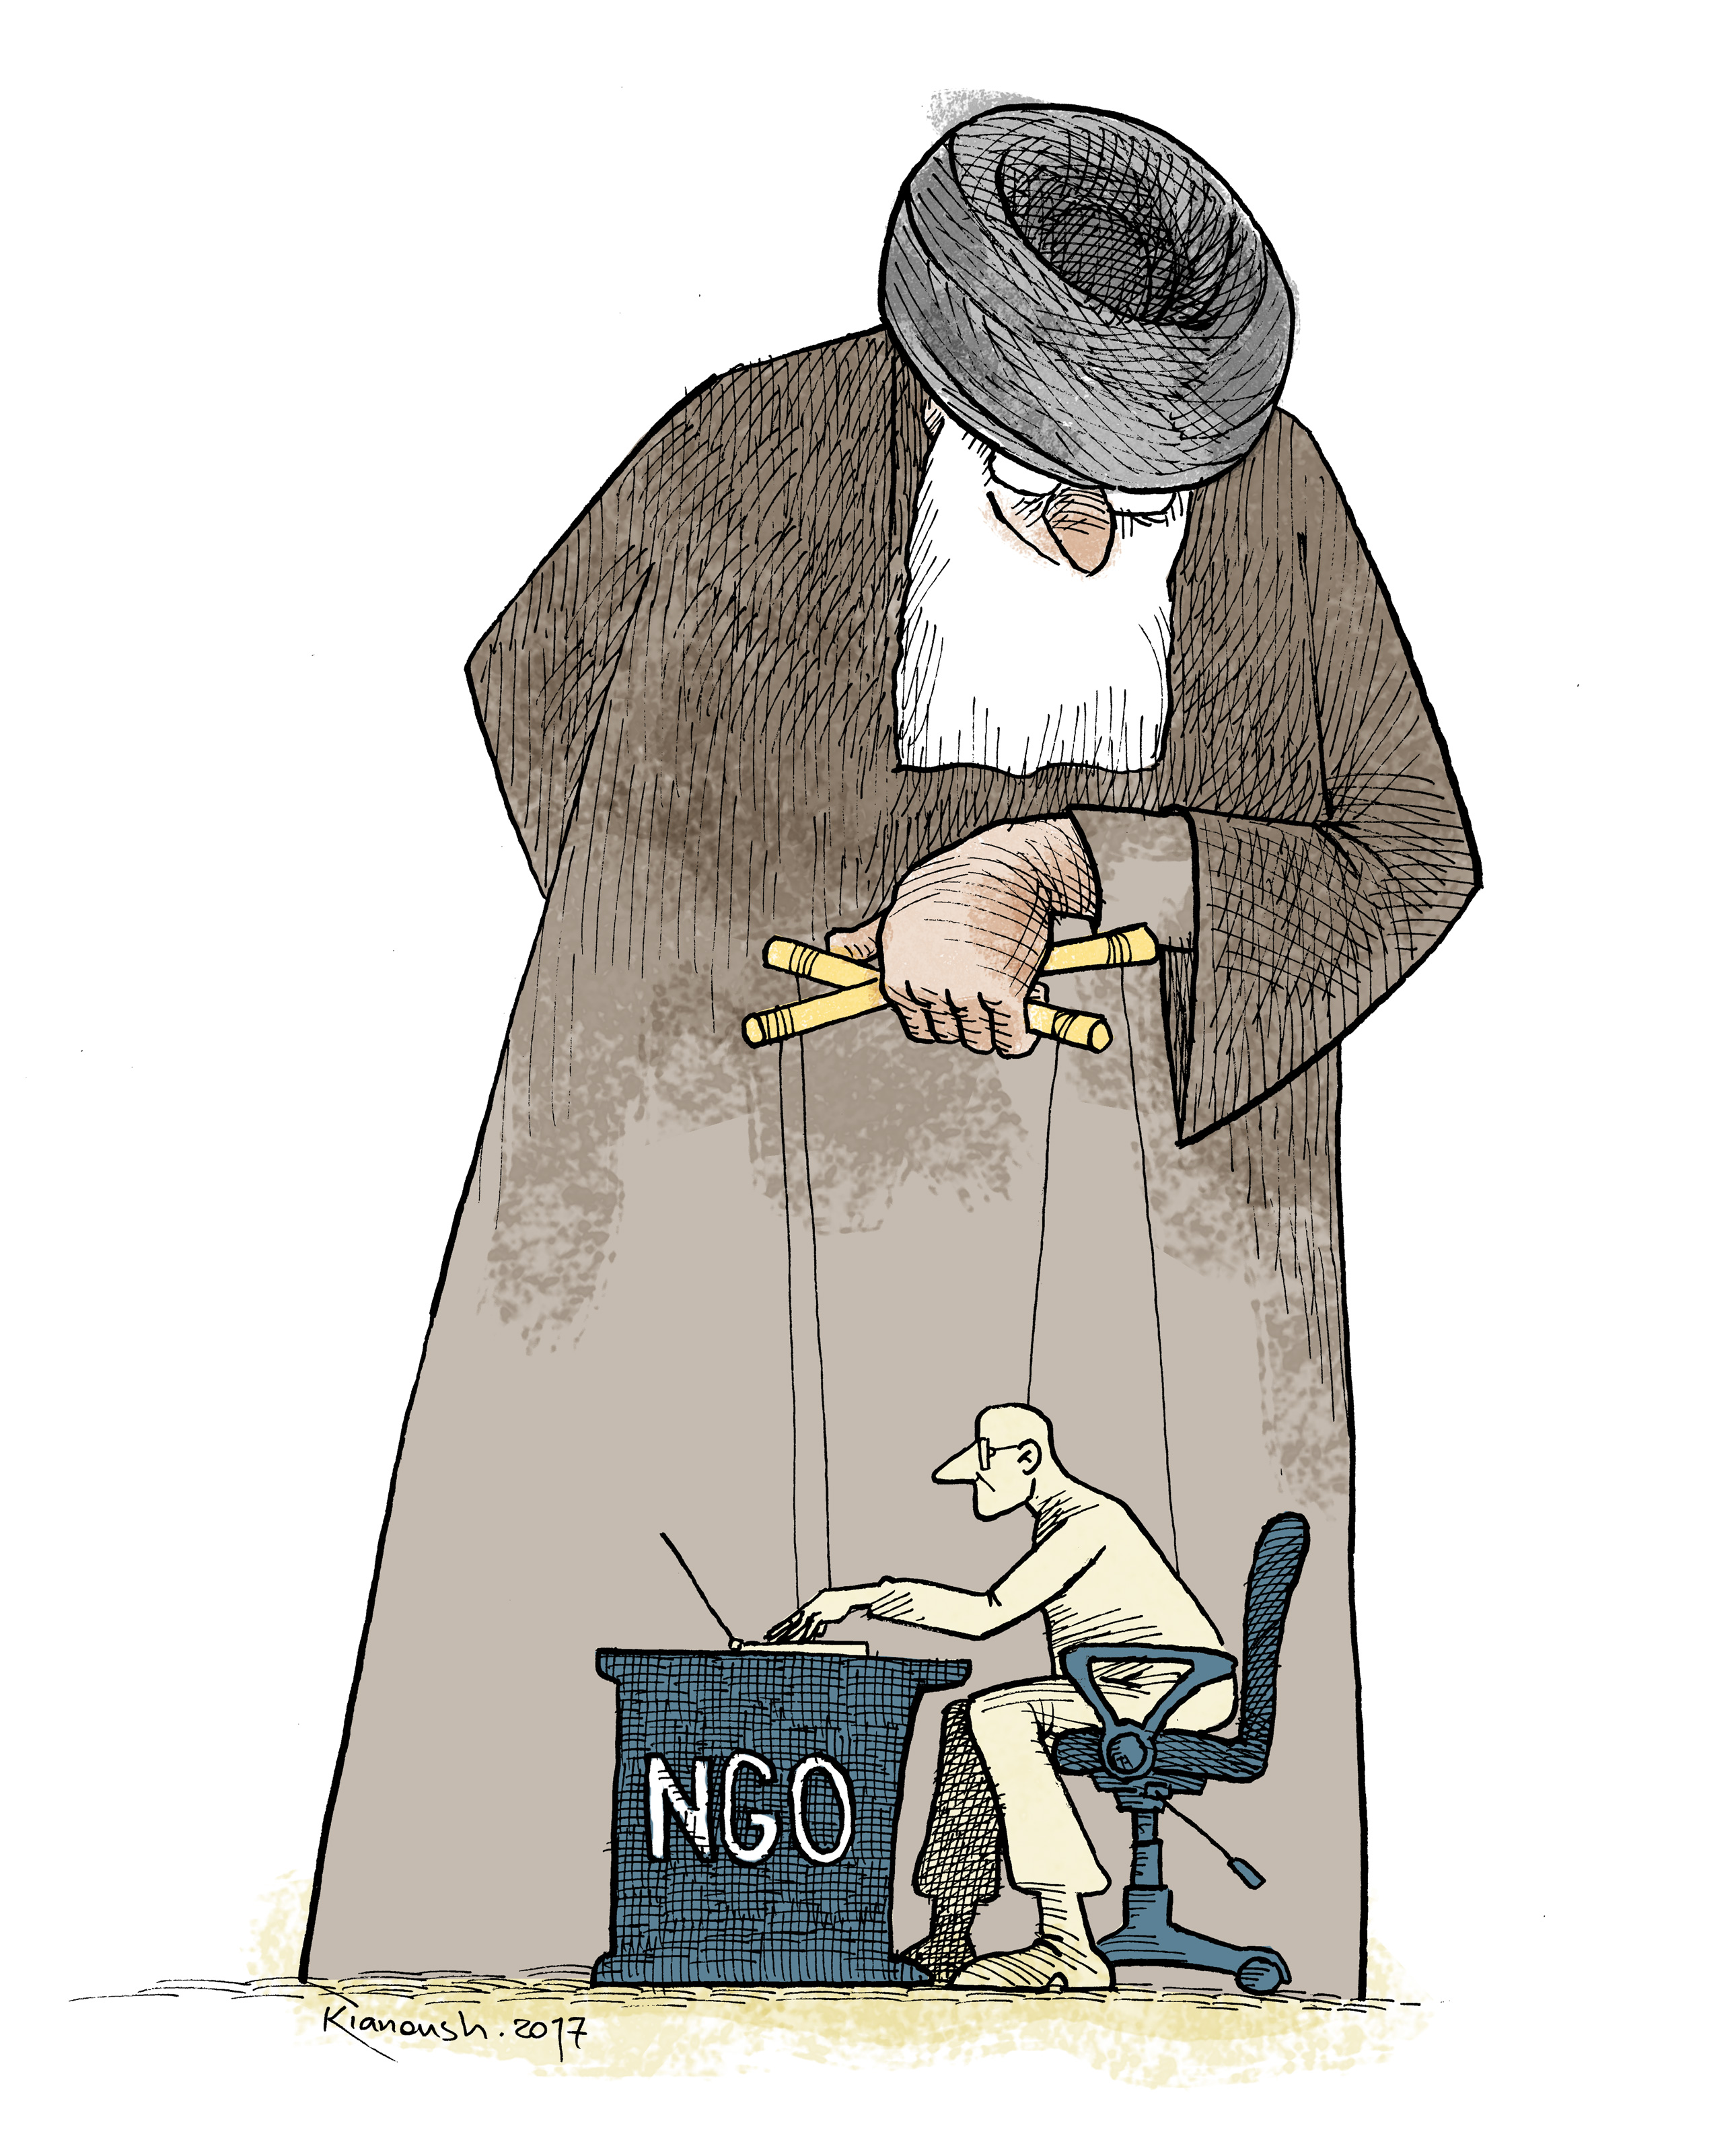 Iranian NGO